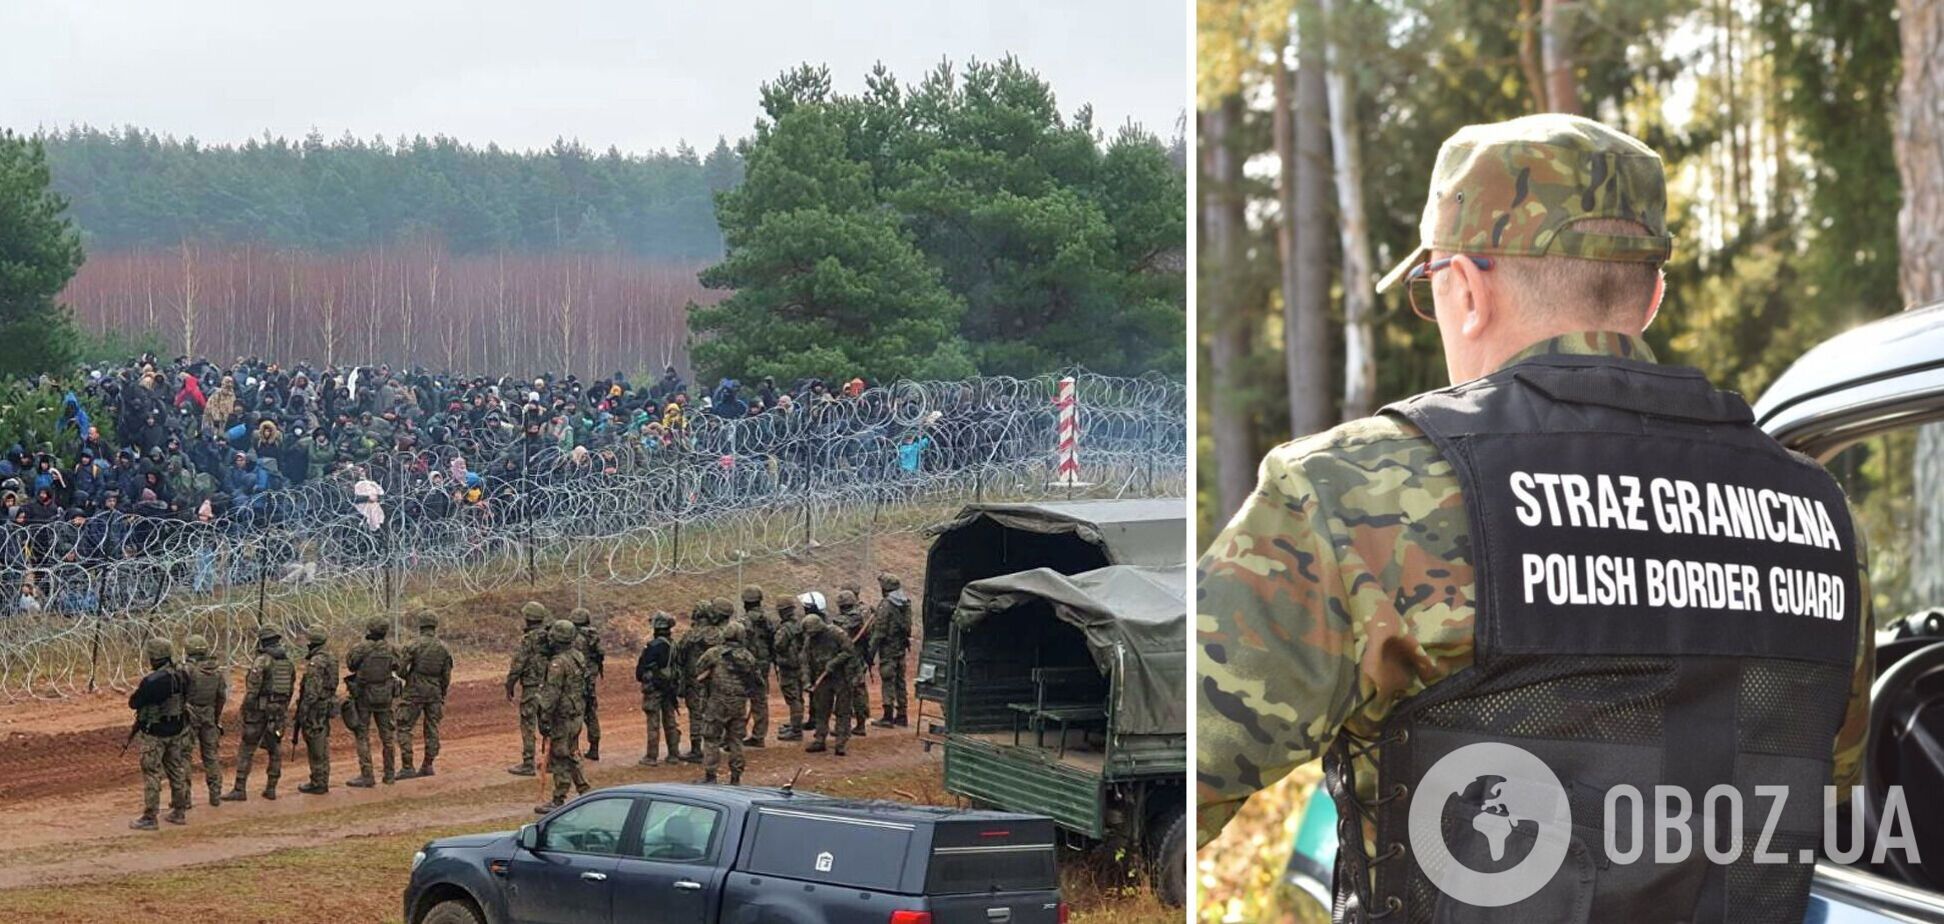 Возле границы Беларуси с Польшей произошла стрельба, мигранты готовятся к новому штурму. Фото и видео